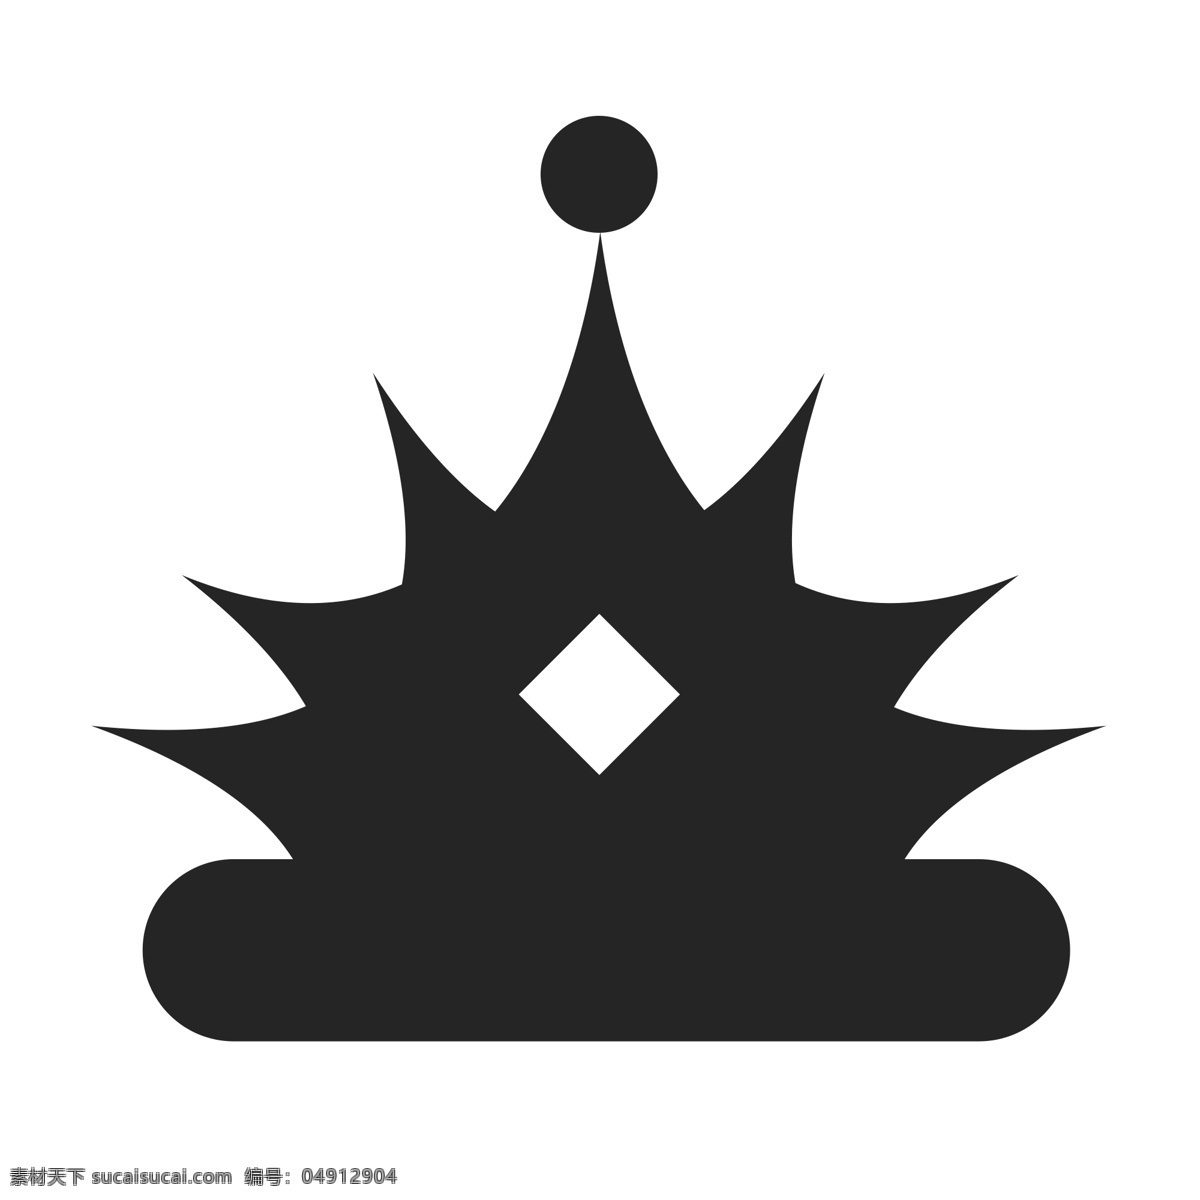 剪影 头 戴 菱形 点缀 皇冠 图标 黑色 头戴 镶嵌 钻石 至高荣耀 皇室贵族 vip 会员 无价 高贵